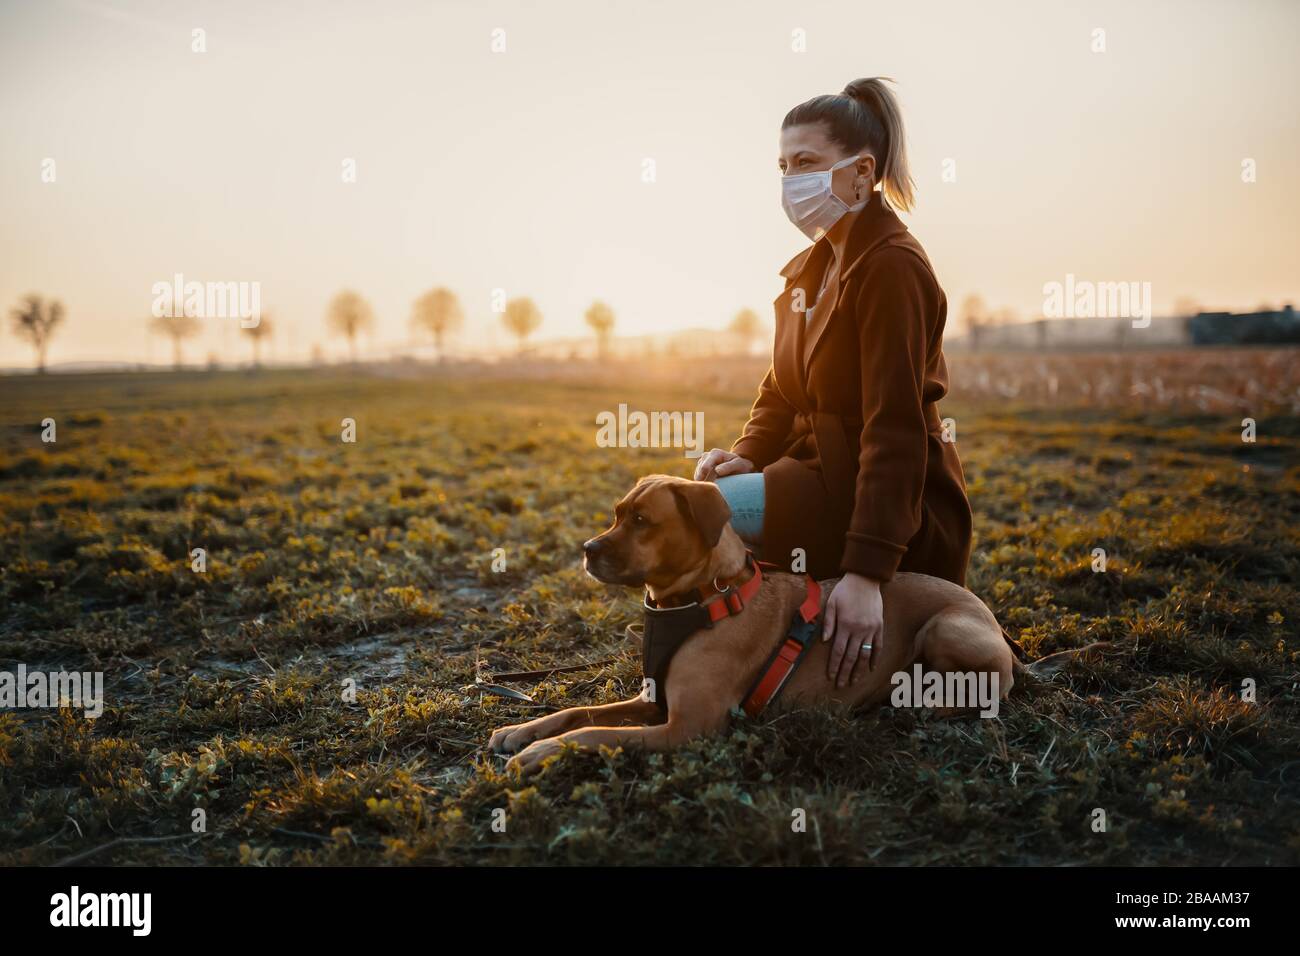 Une femme portant un masque de protection marche seule avec un chien à l'extérieur en raison de la pandémie de virus corona covid-19 Banque D'Images